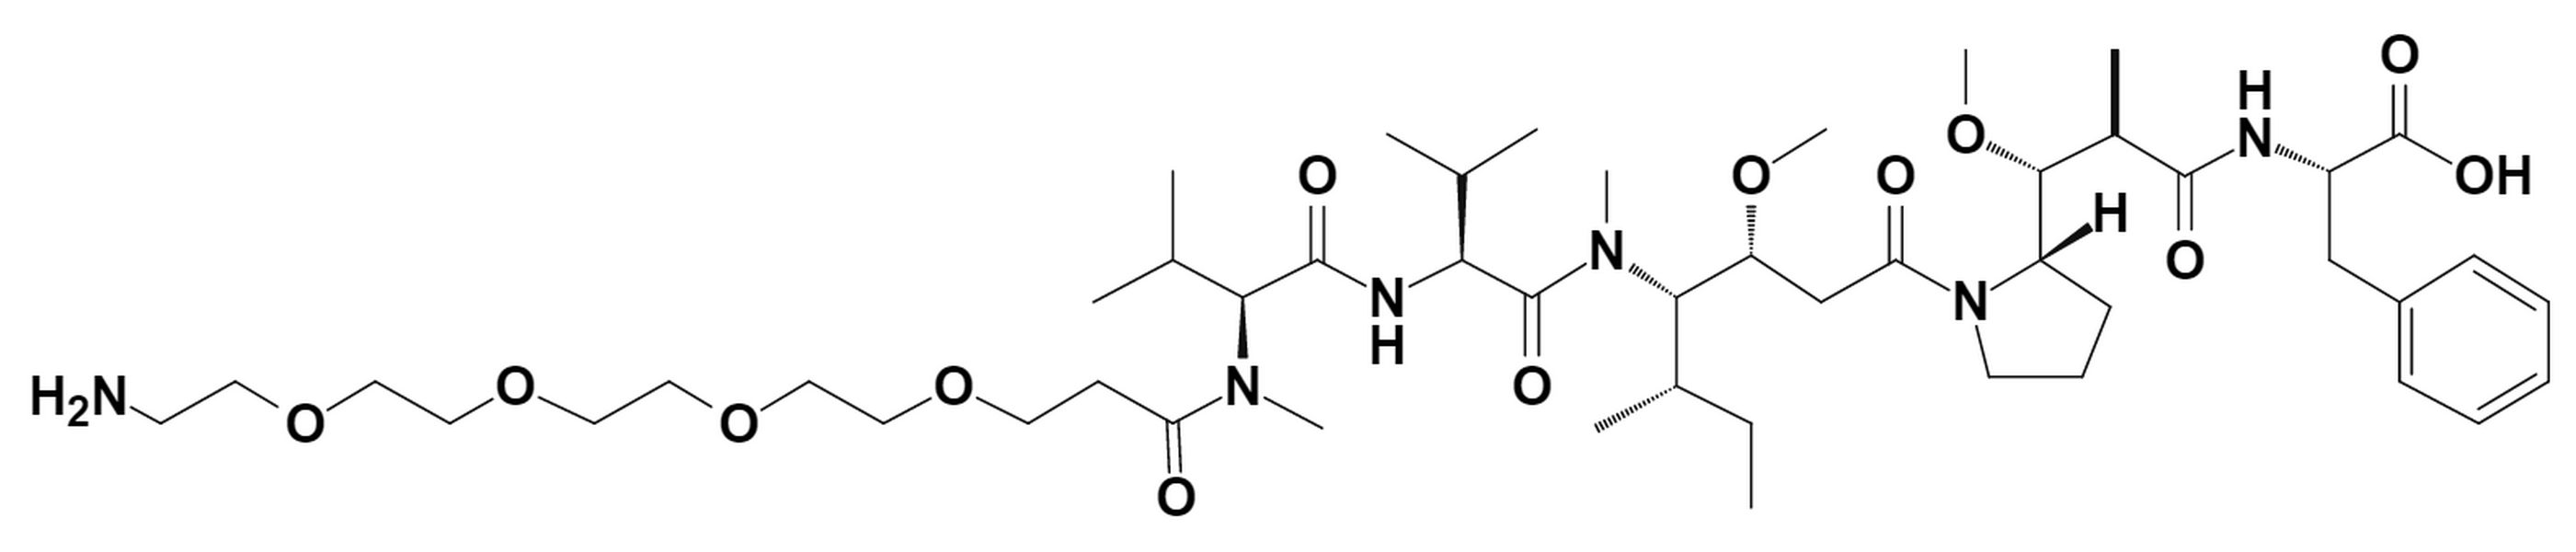 MMAF-PEG4-amine TFA salt